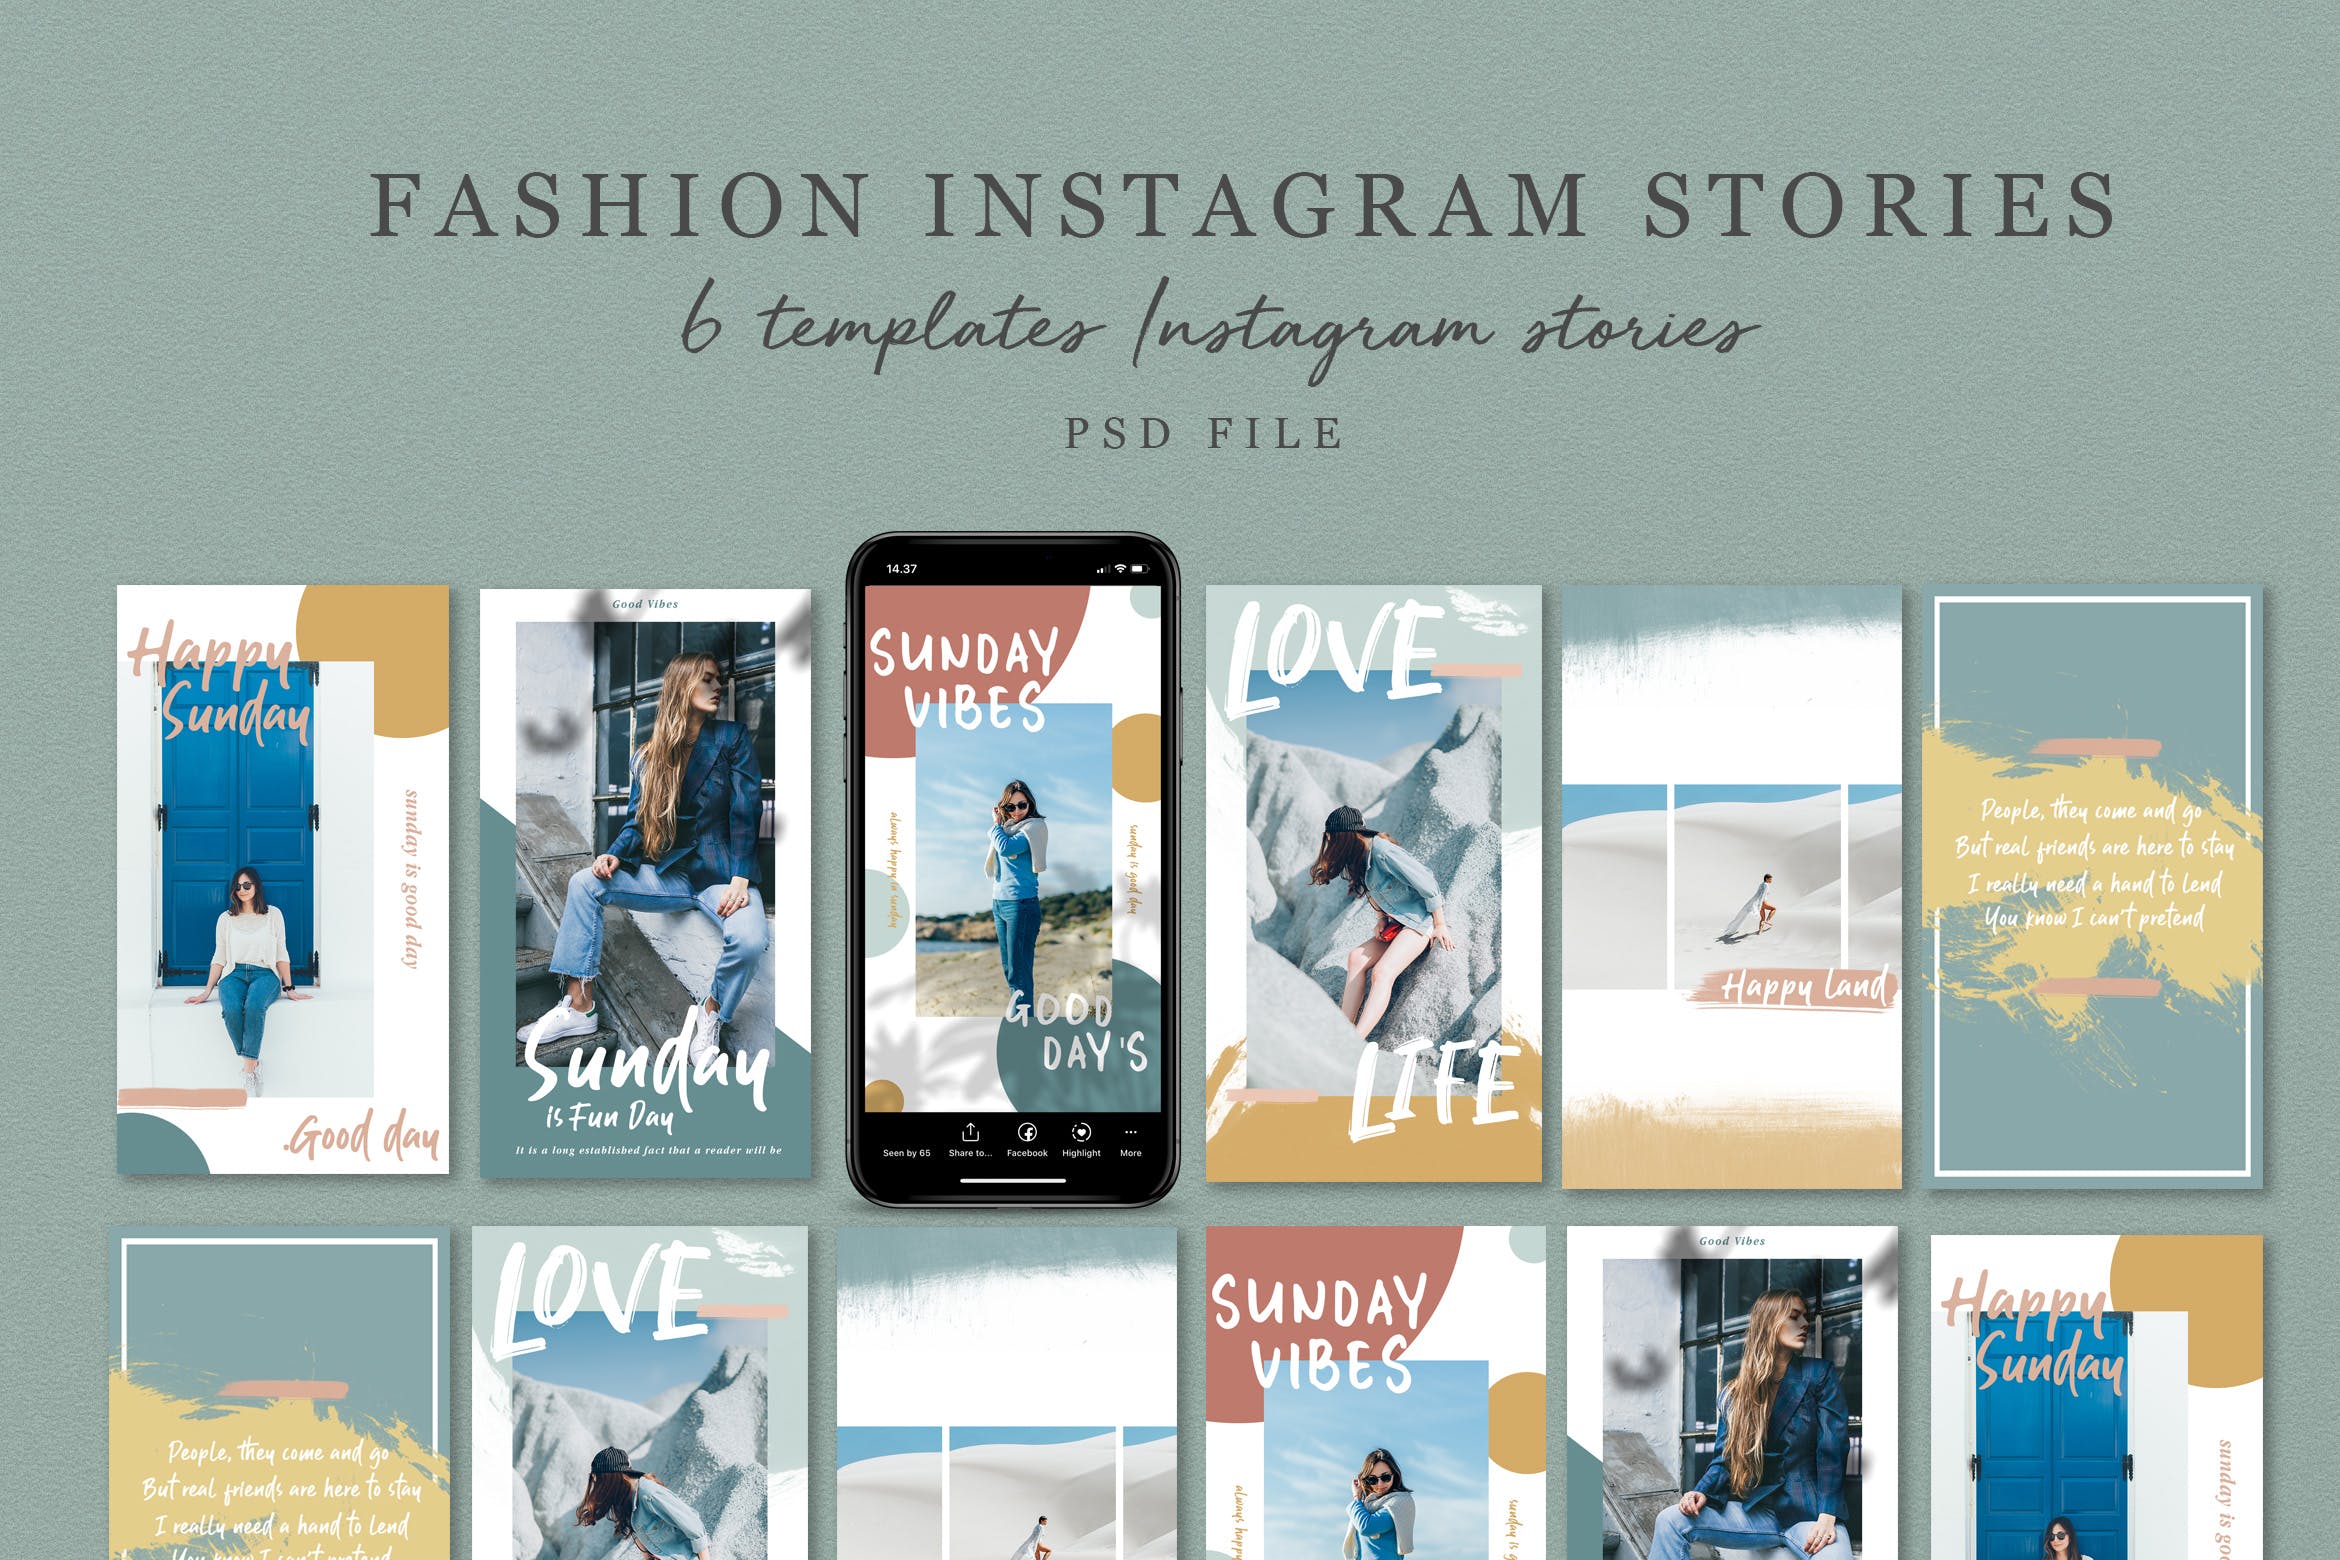 时尚服饰服装品牌推广Instagram故事模板v.2 Fashion Instagram Stories V.02设计素材模板